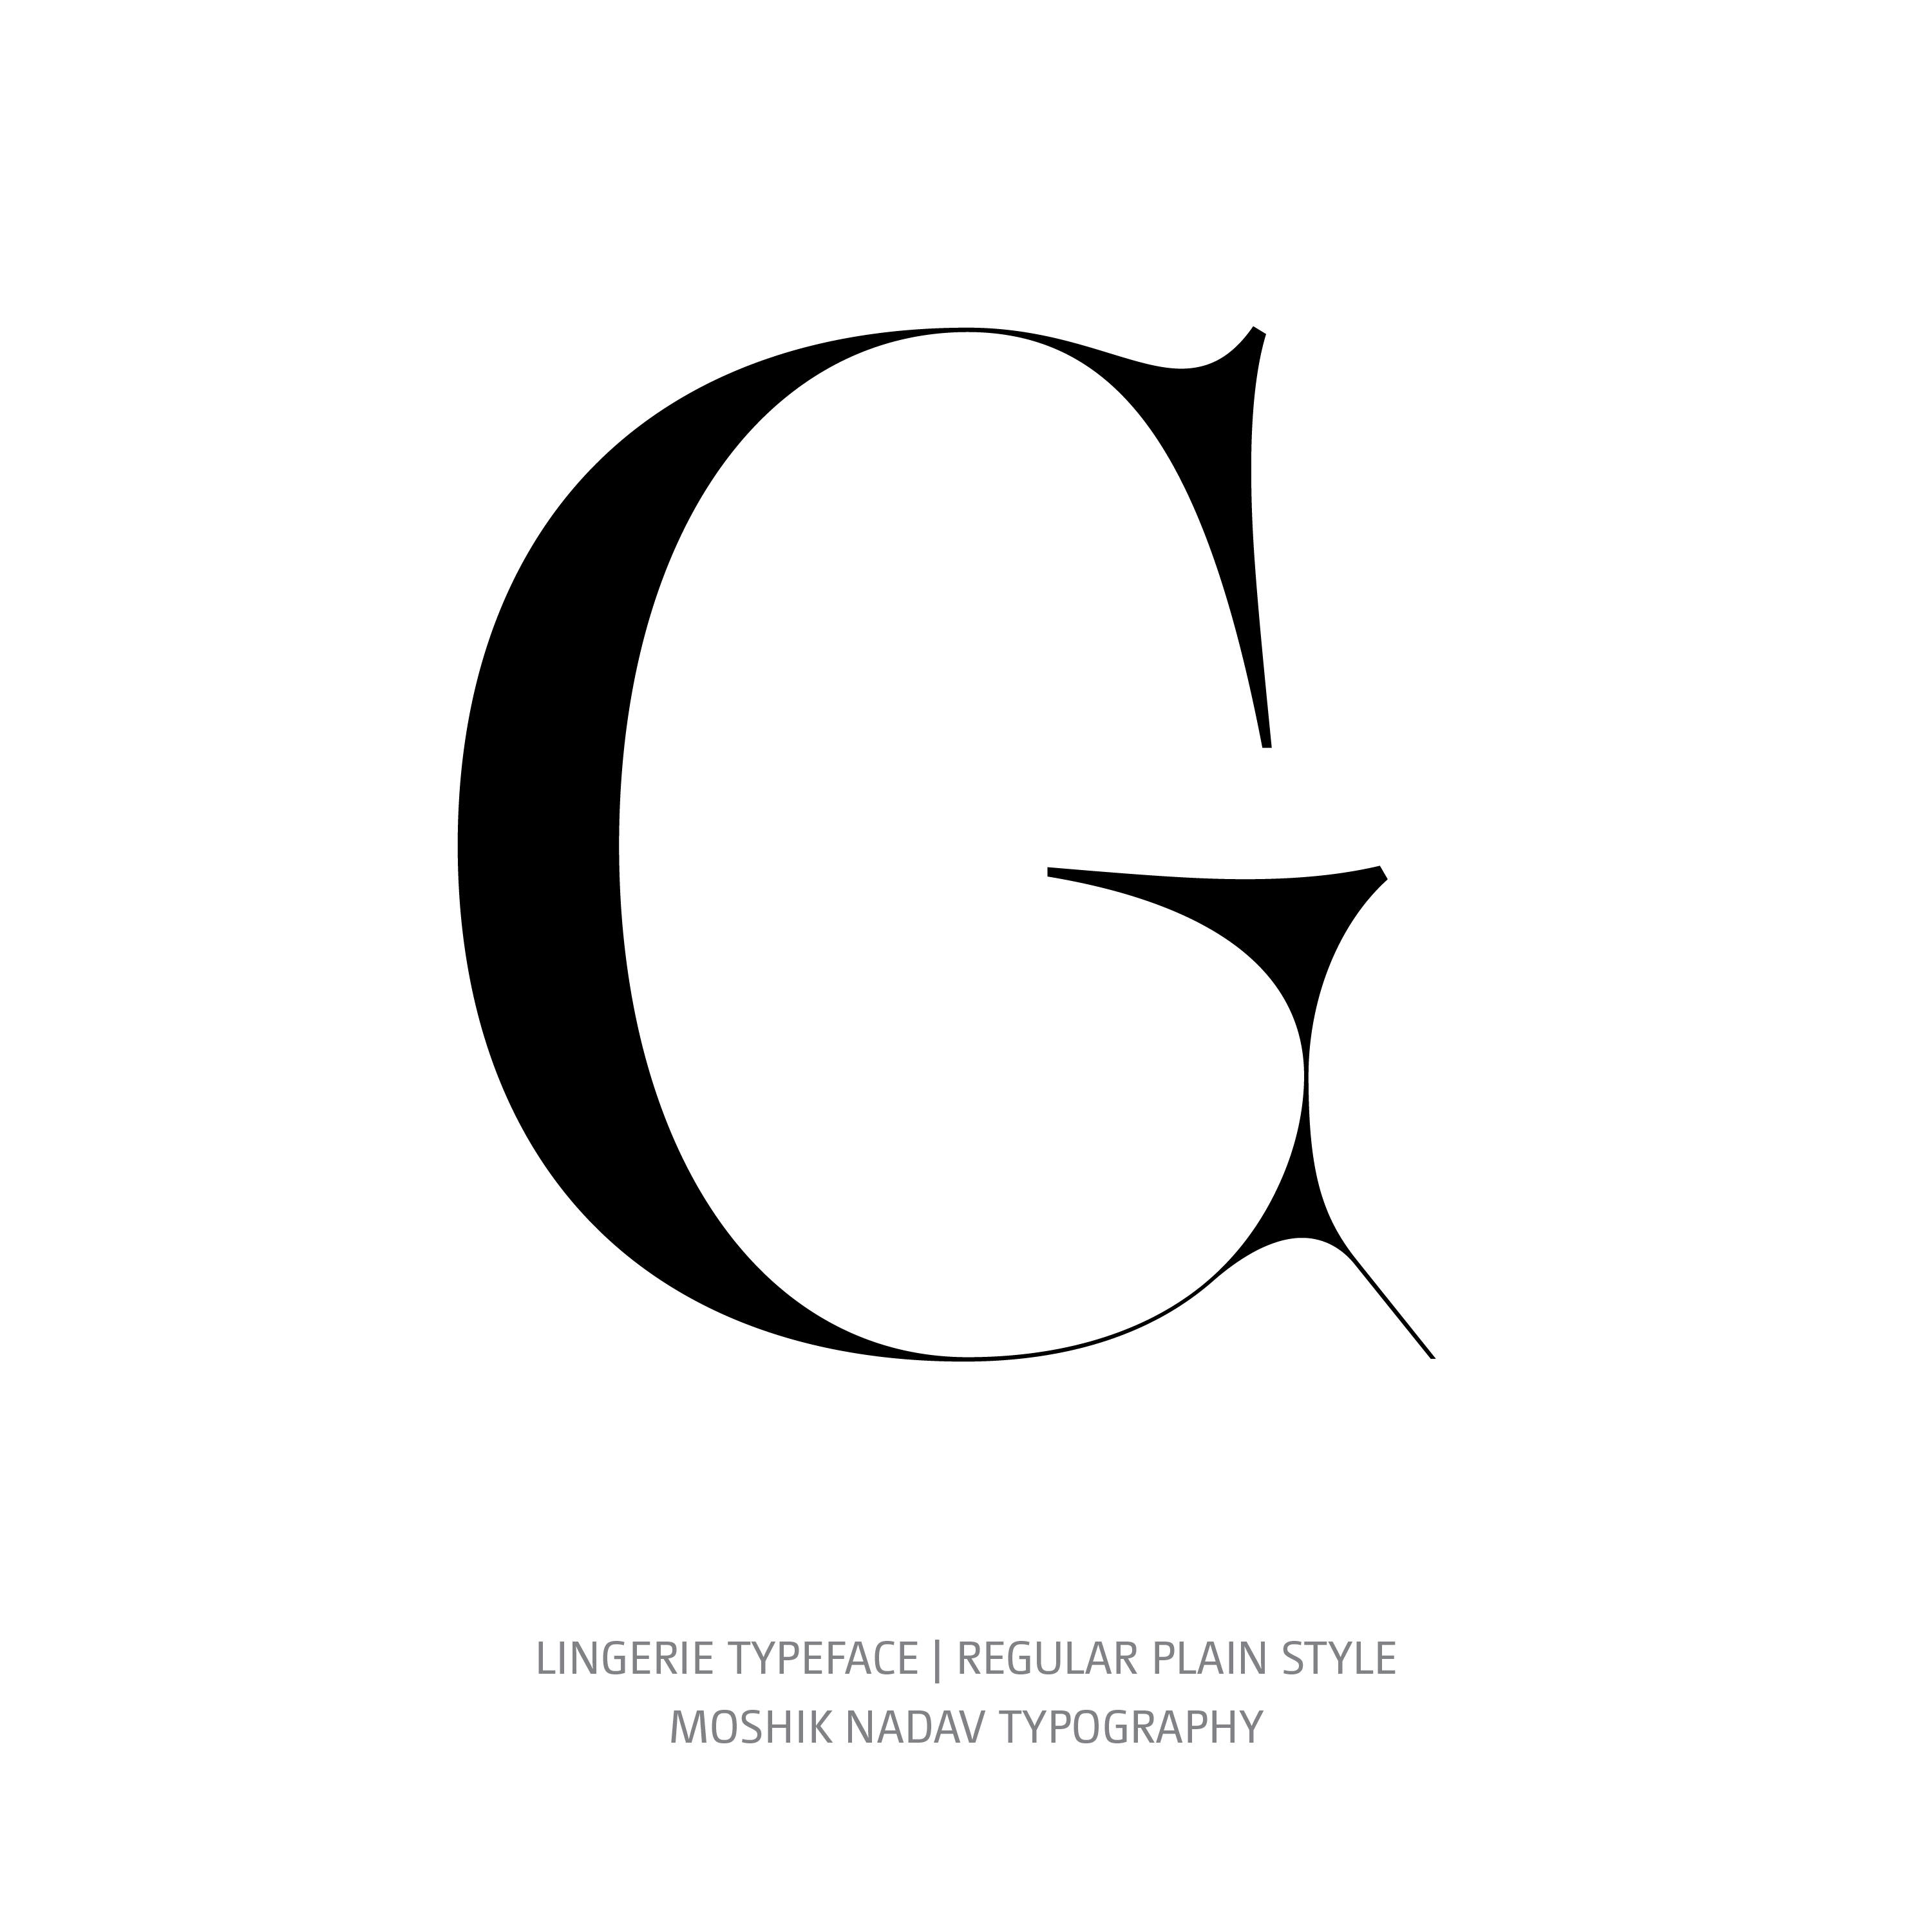 Lingerie Typeface Regular Plain G